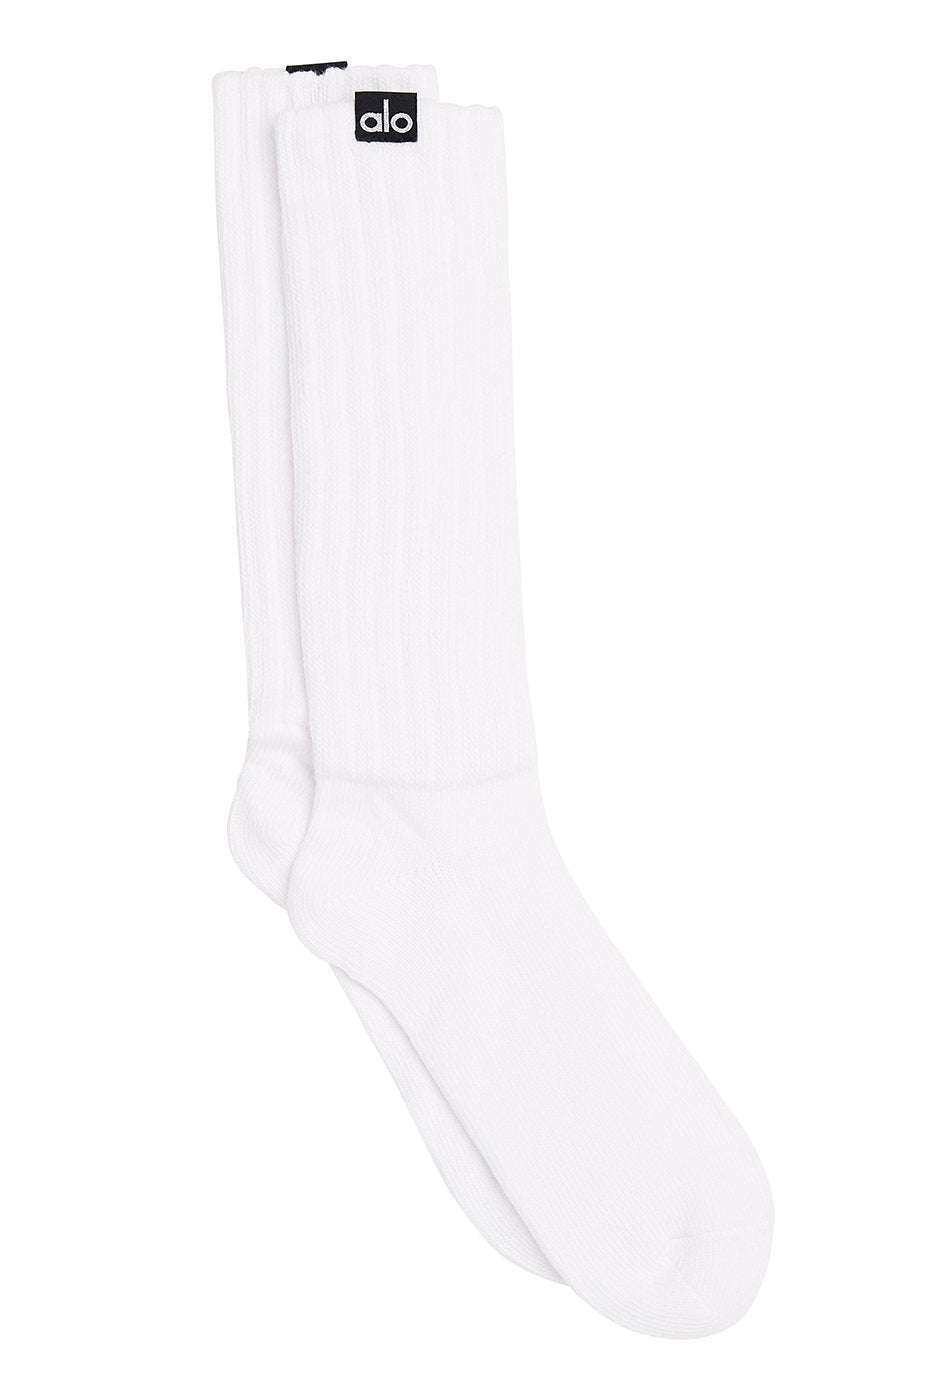 Alo Yoga M/L Pivot Barre Sock - Dove Grey Heather – Soulcielite